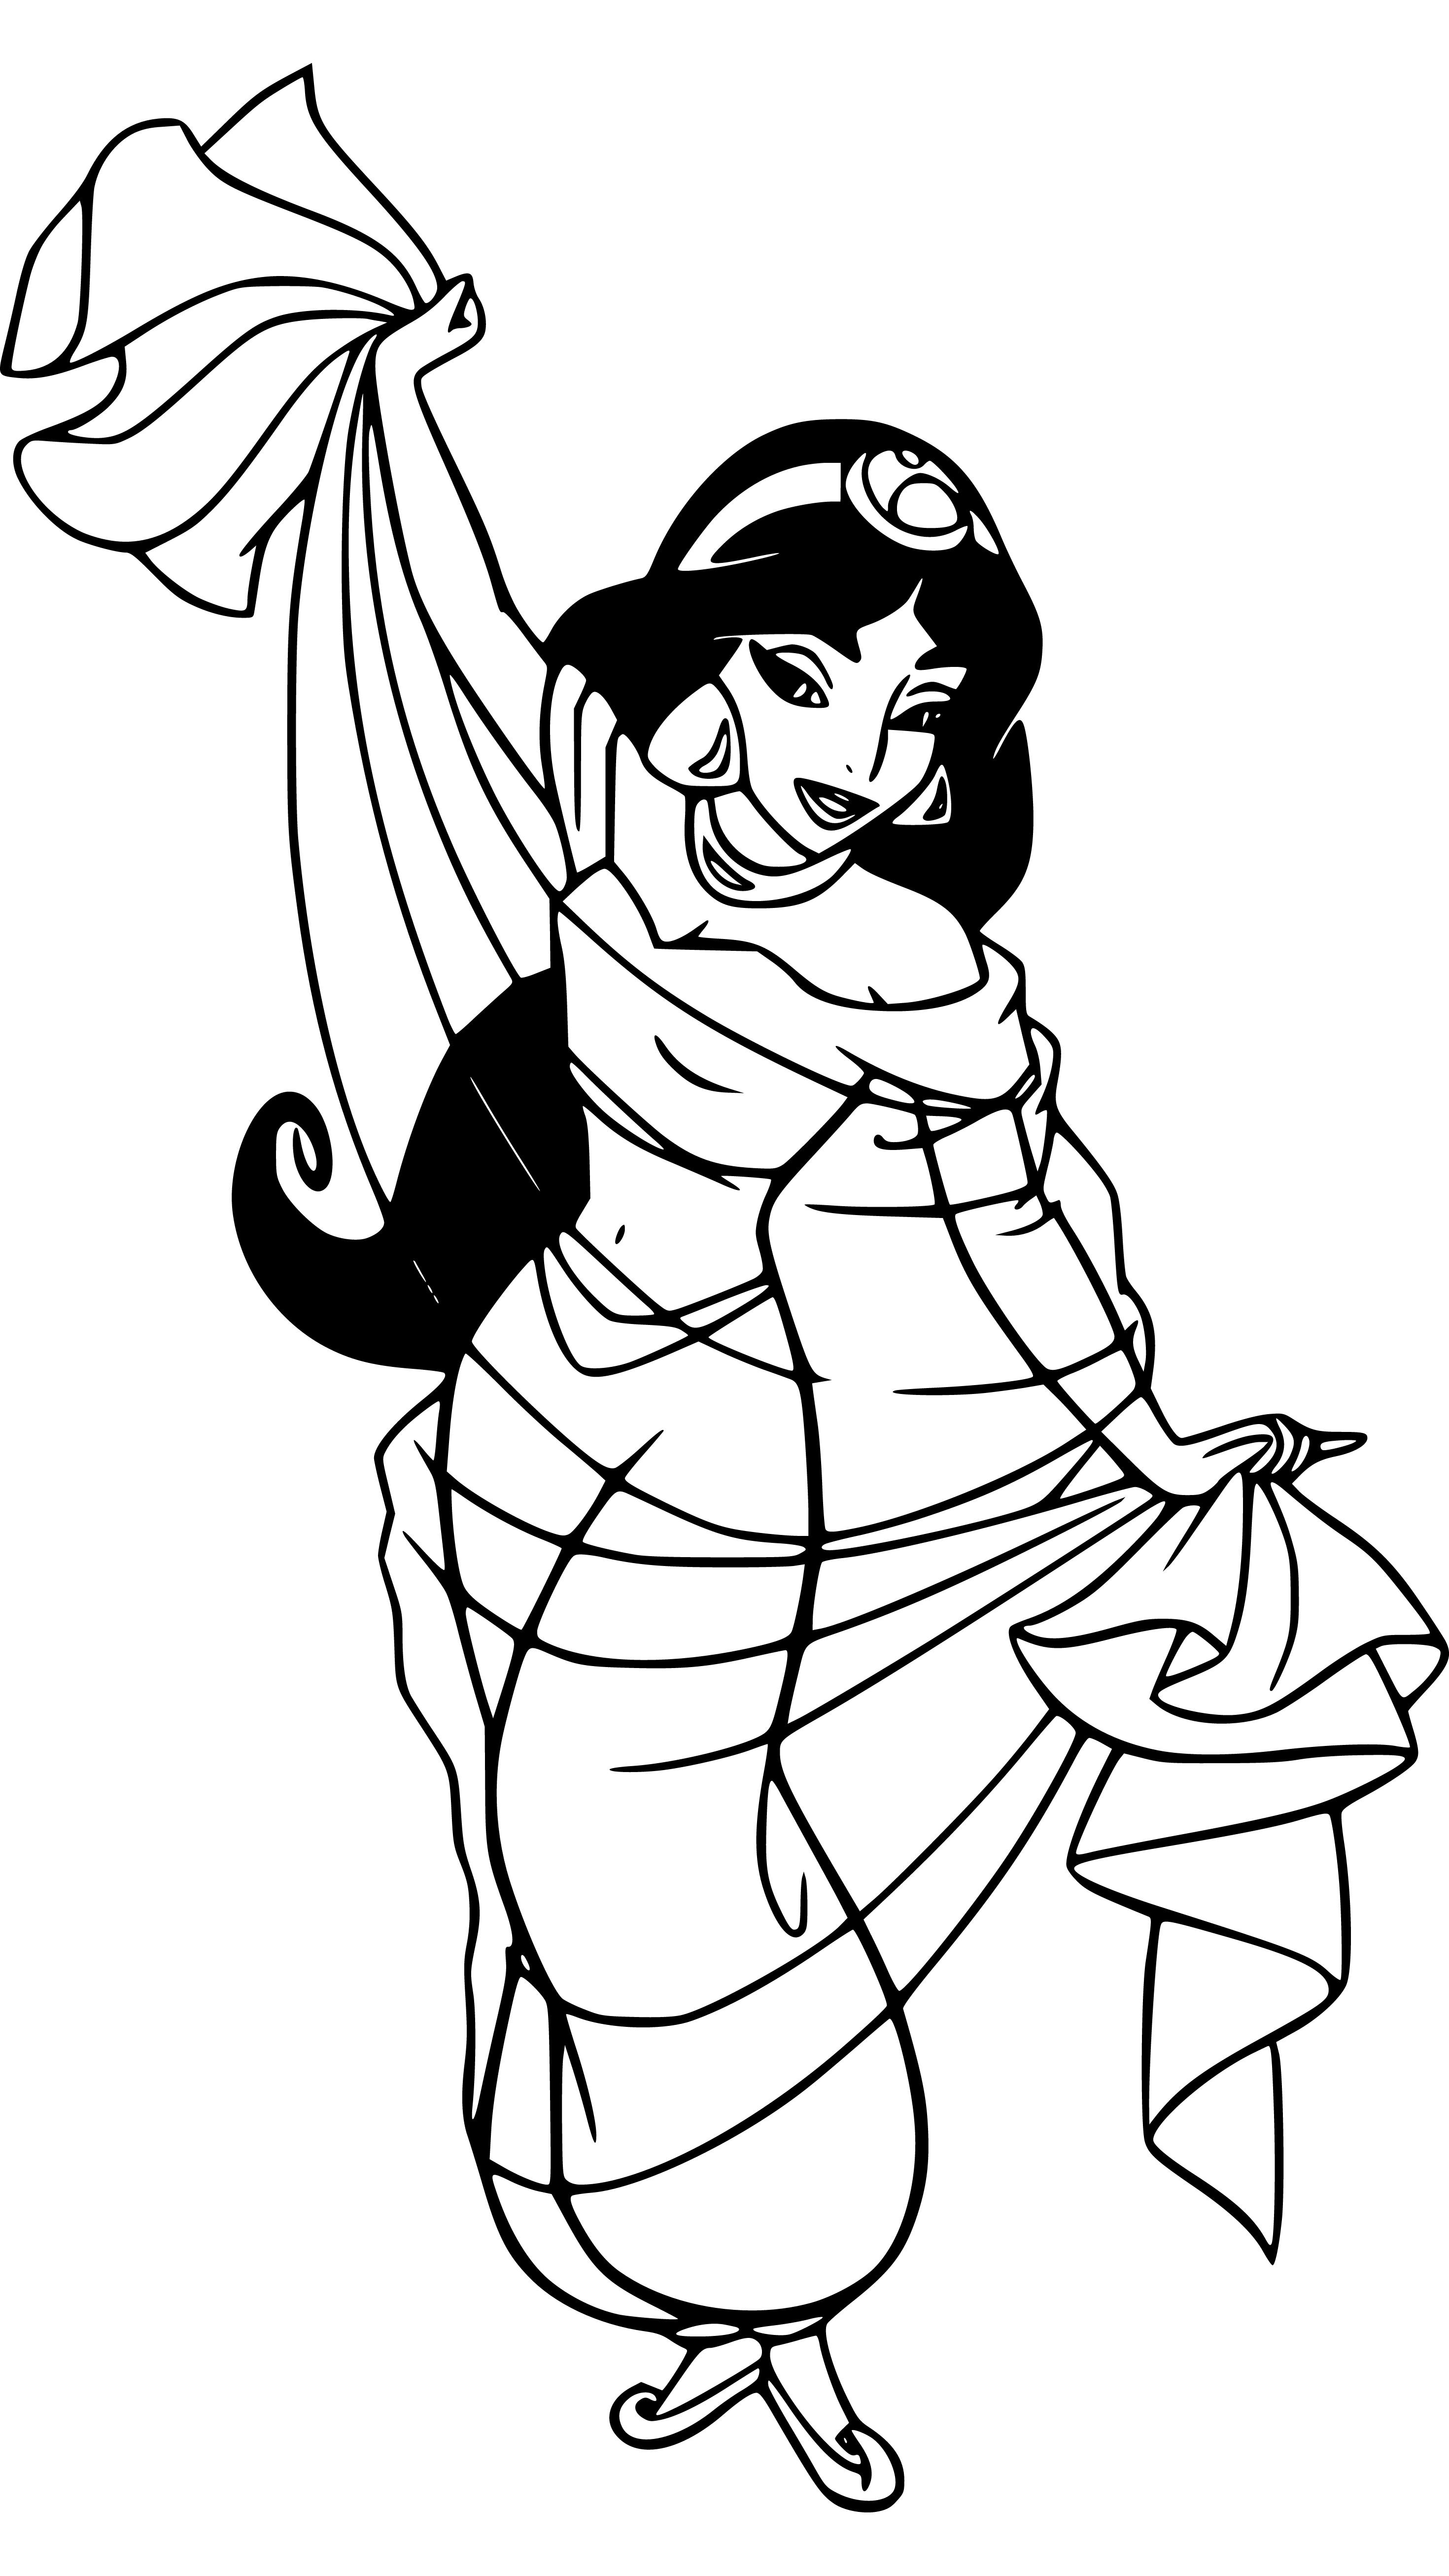 Princess Jasmine Empty blank outline to color for kids - SheetalColor.com